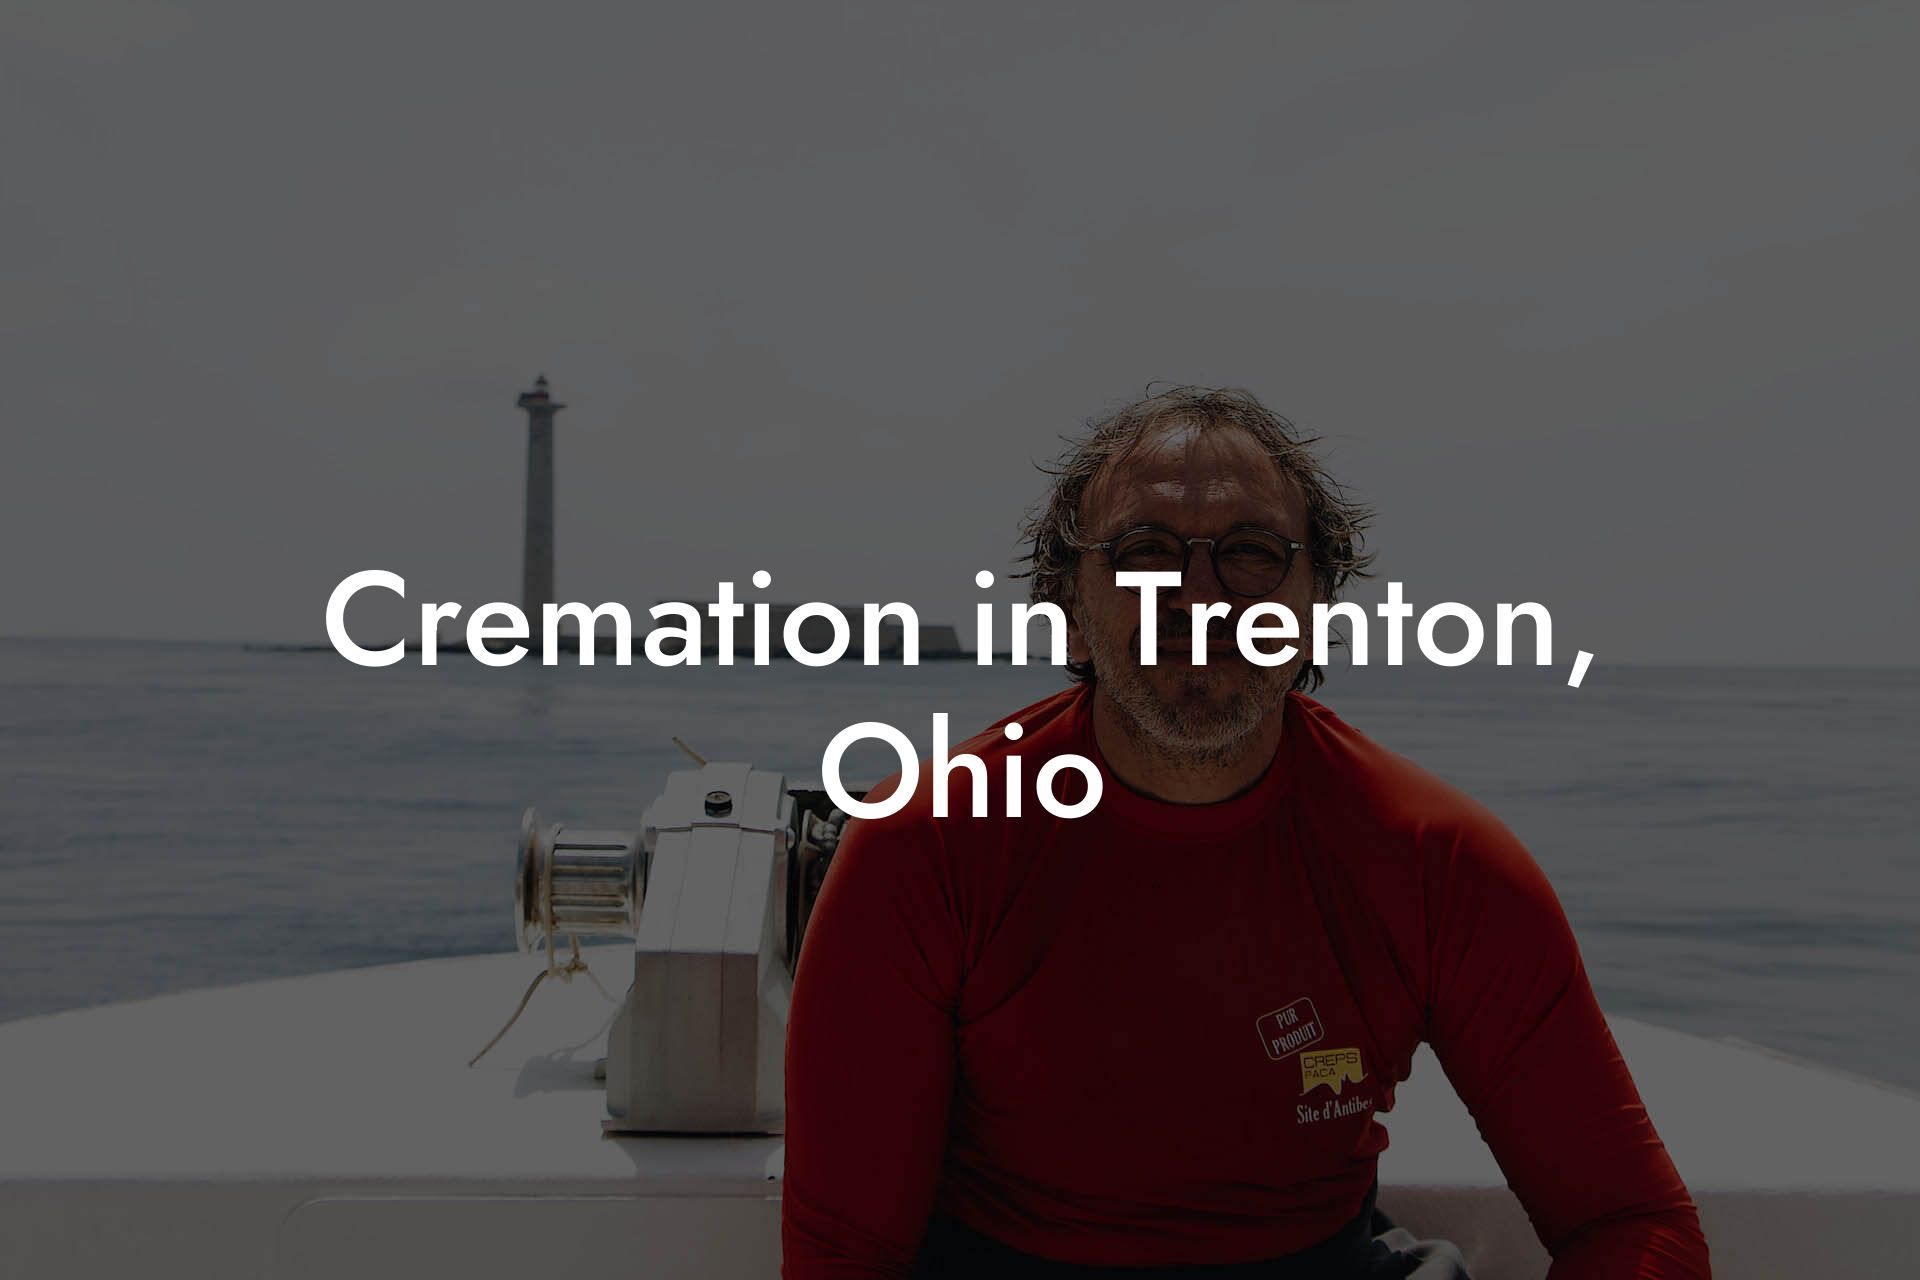 Cremation in Trenton, Ohio